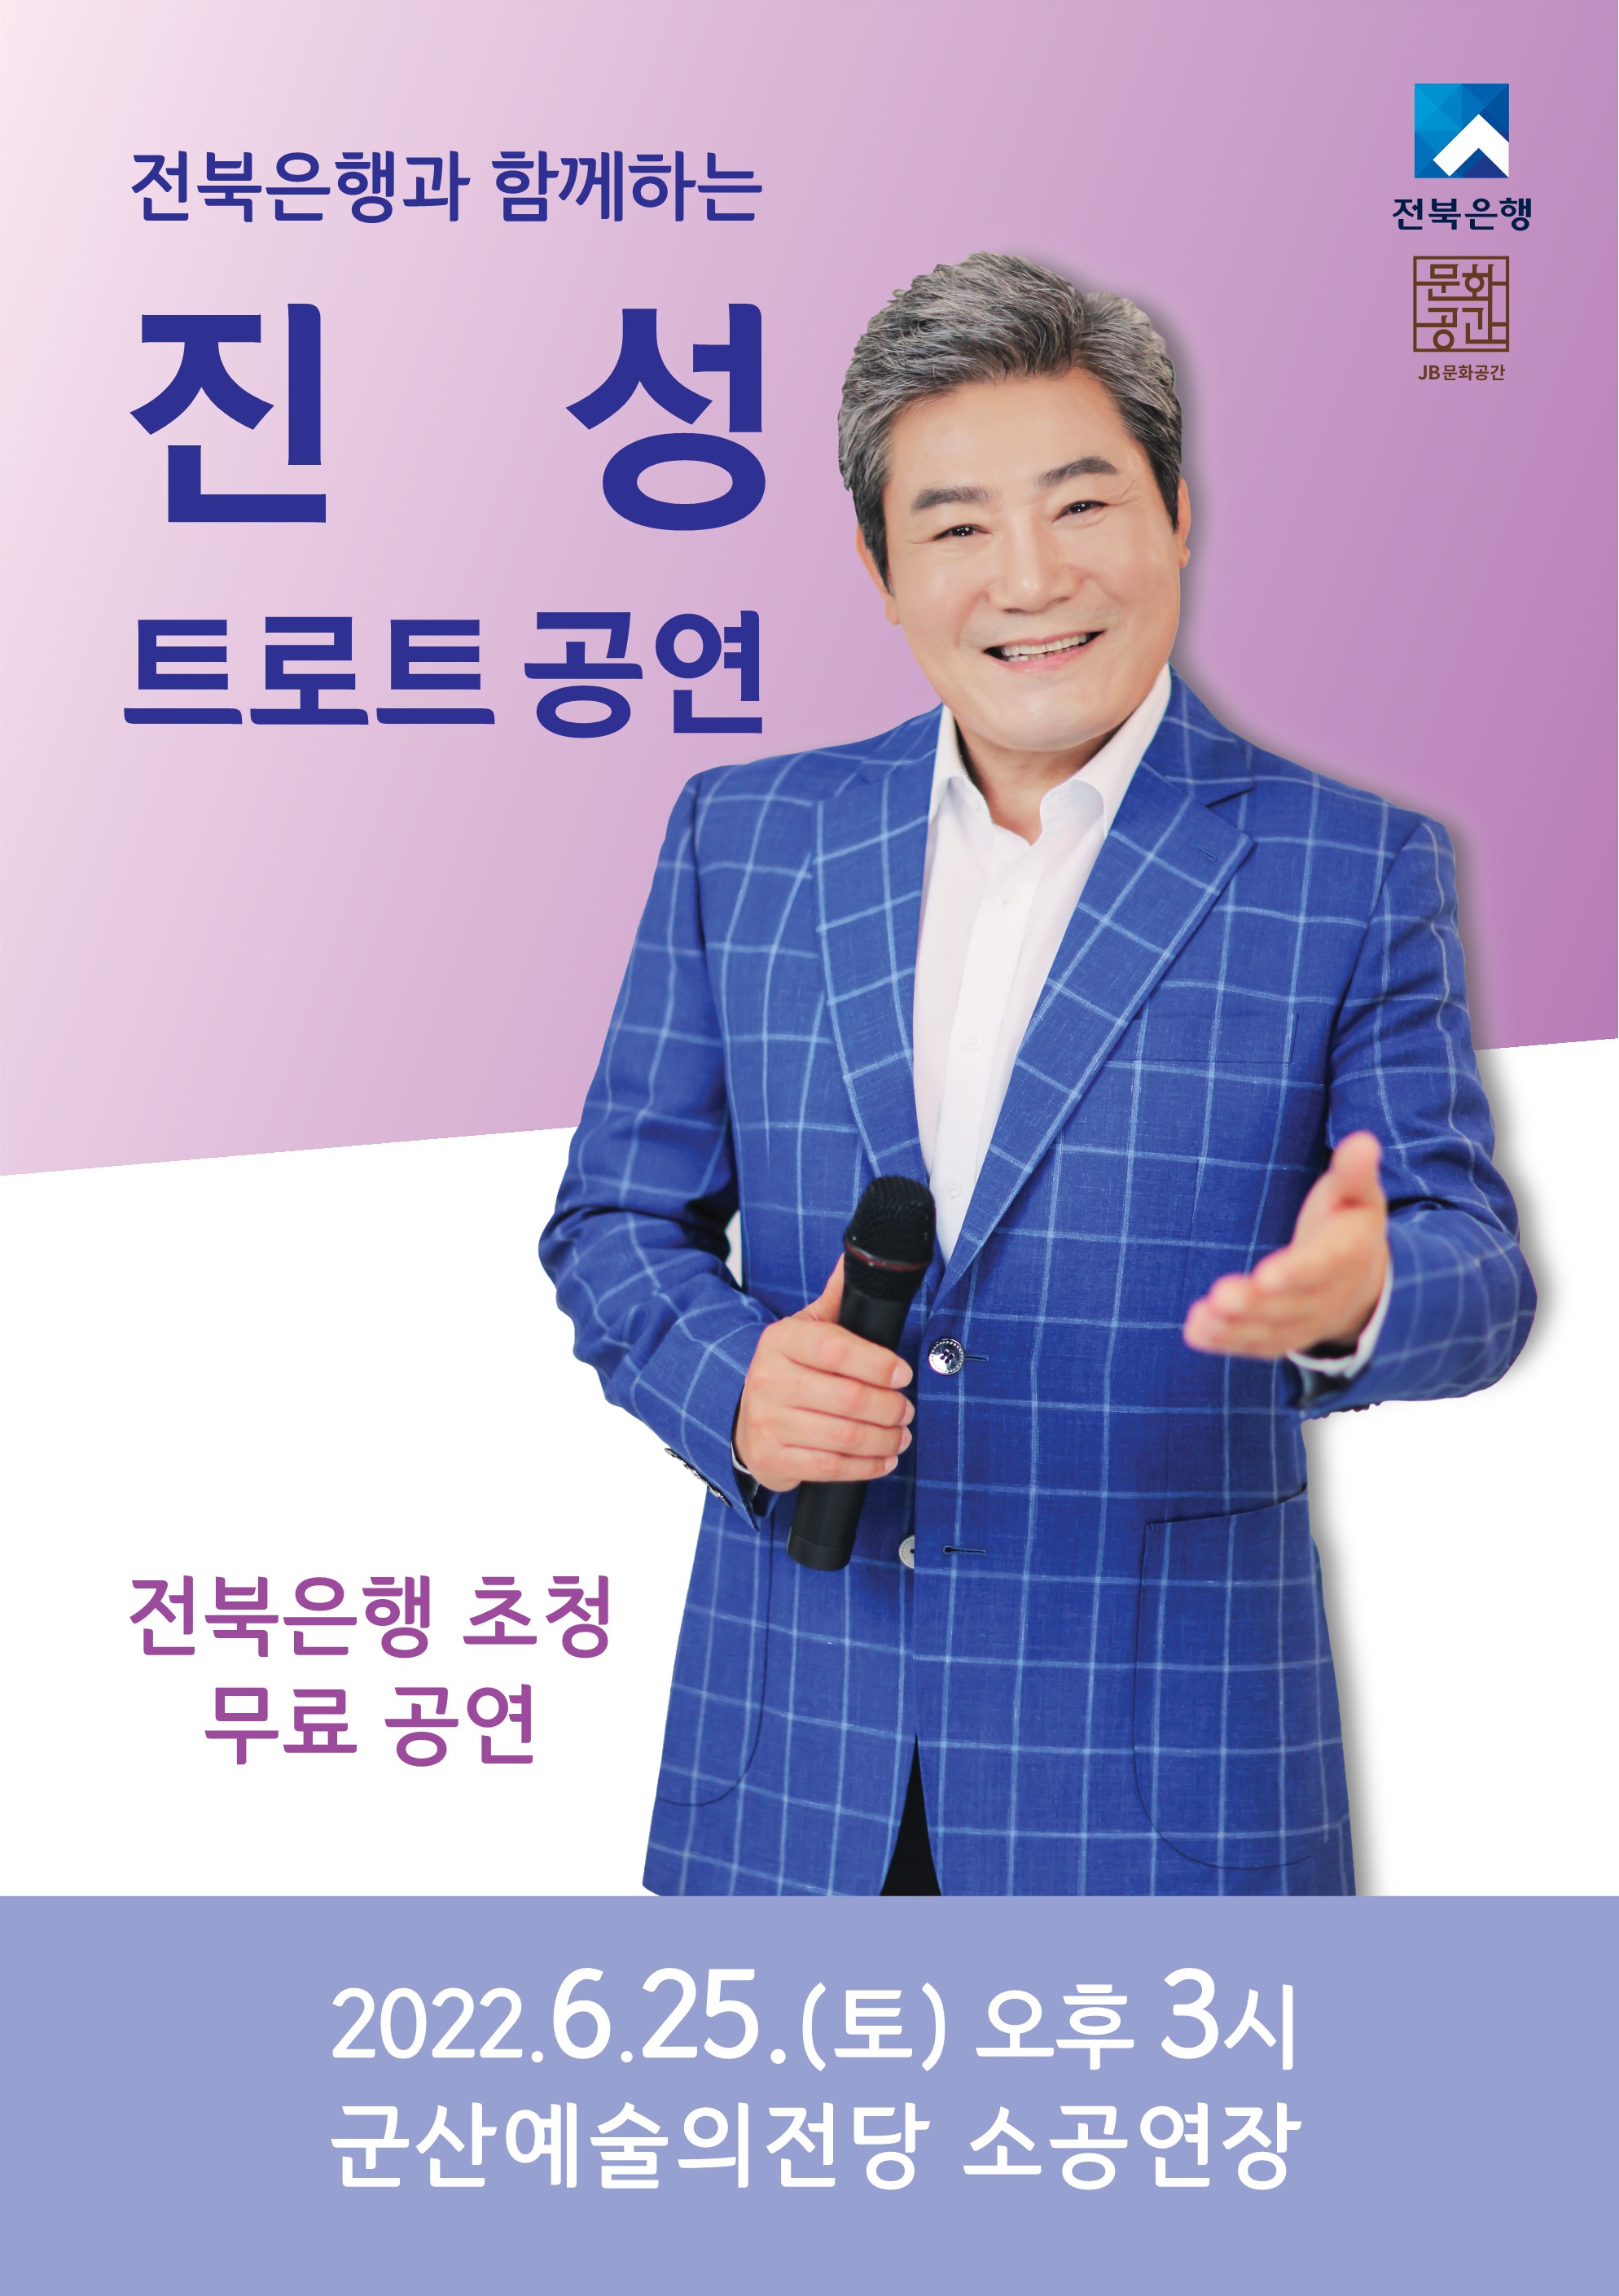 전북은행과 함께하는 진성 콘서트